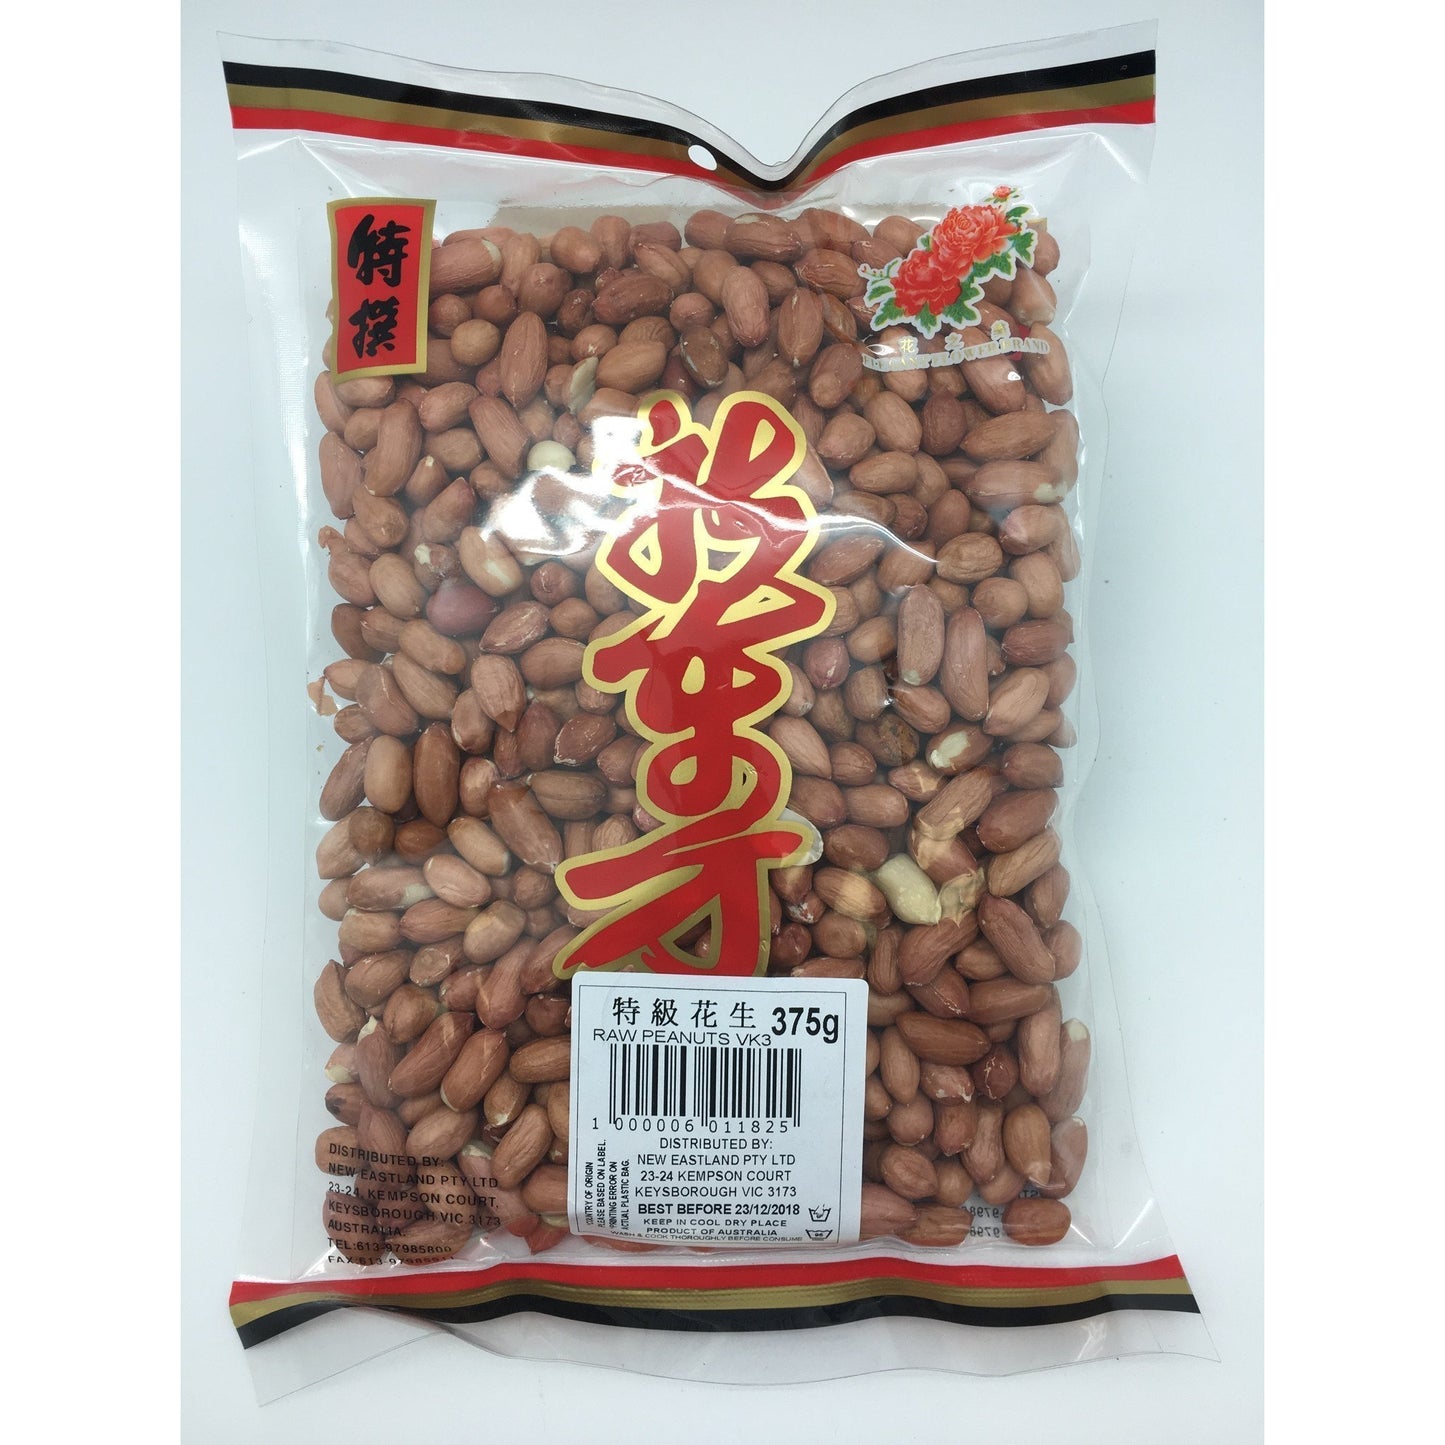 D182KS New Eastland Brand -VK3  Raw Peanuts 375g - 40 bags / 1 CTN - New Eastland Pty Ltd - Asian food wholesalers